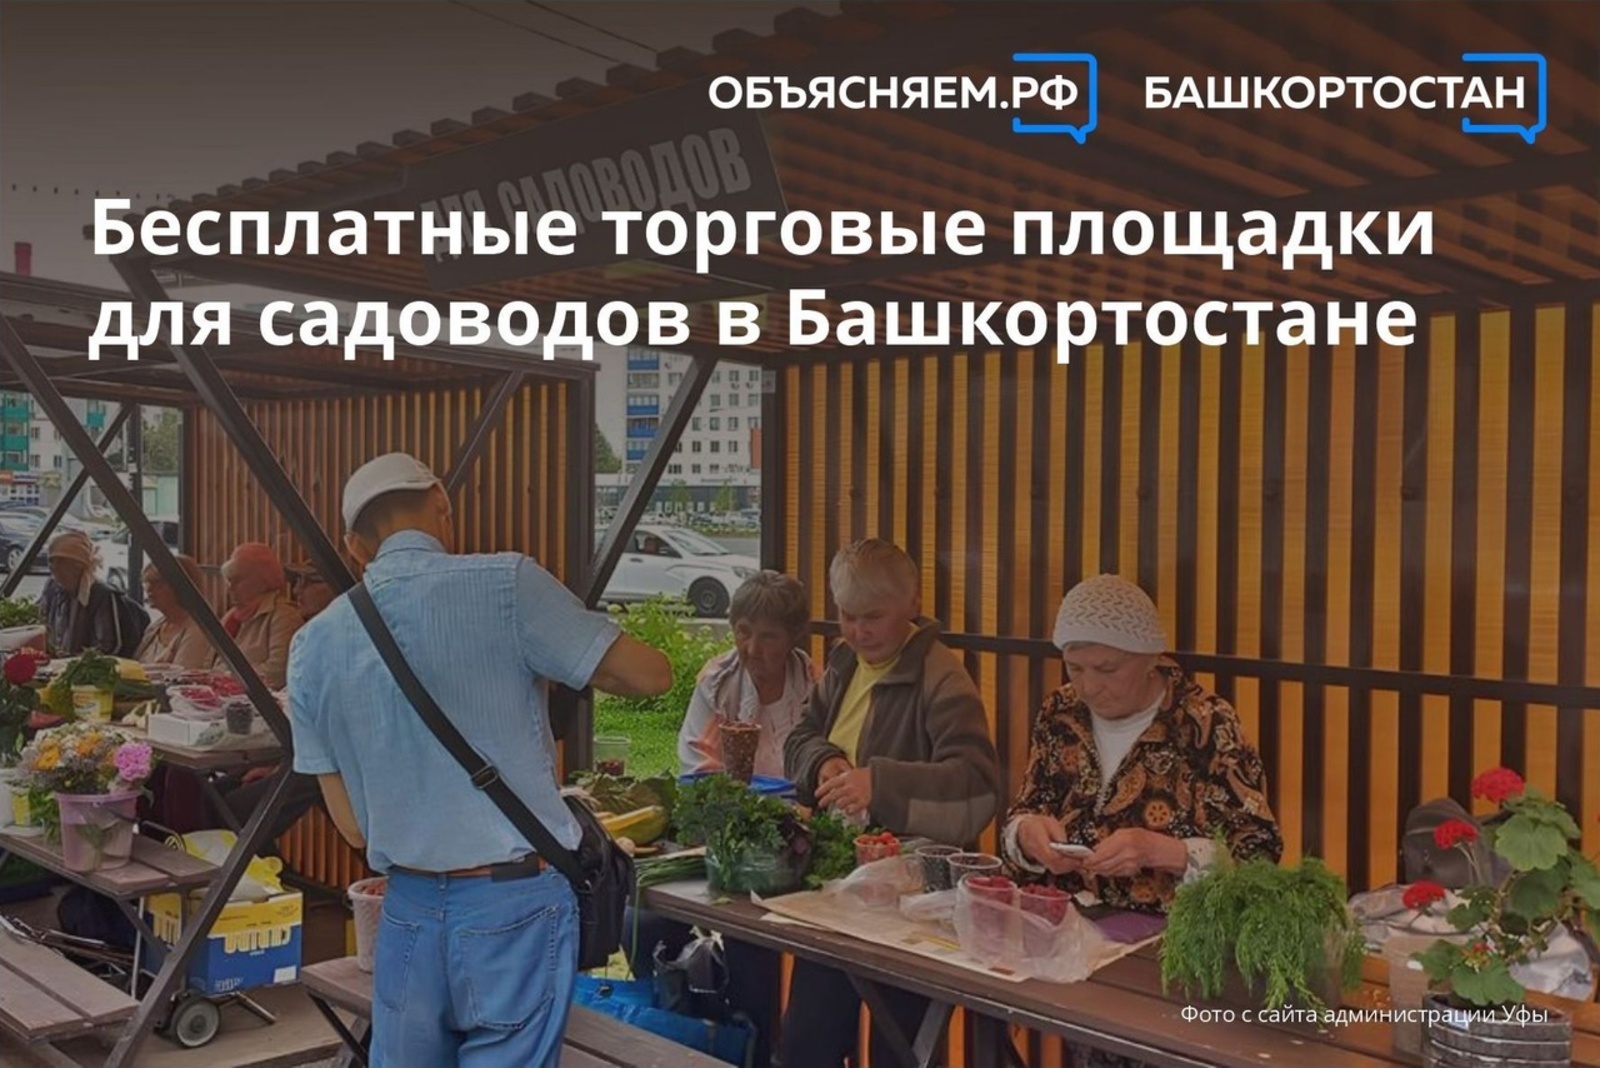 О бесплатных торговых площадках для садоводов в Башкортостане